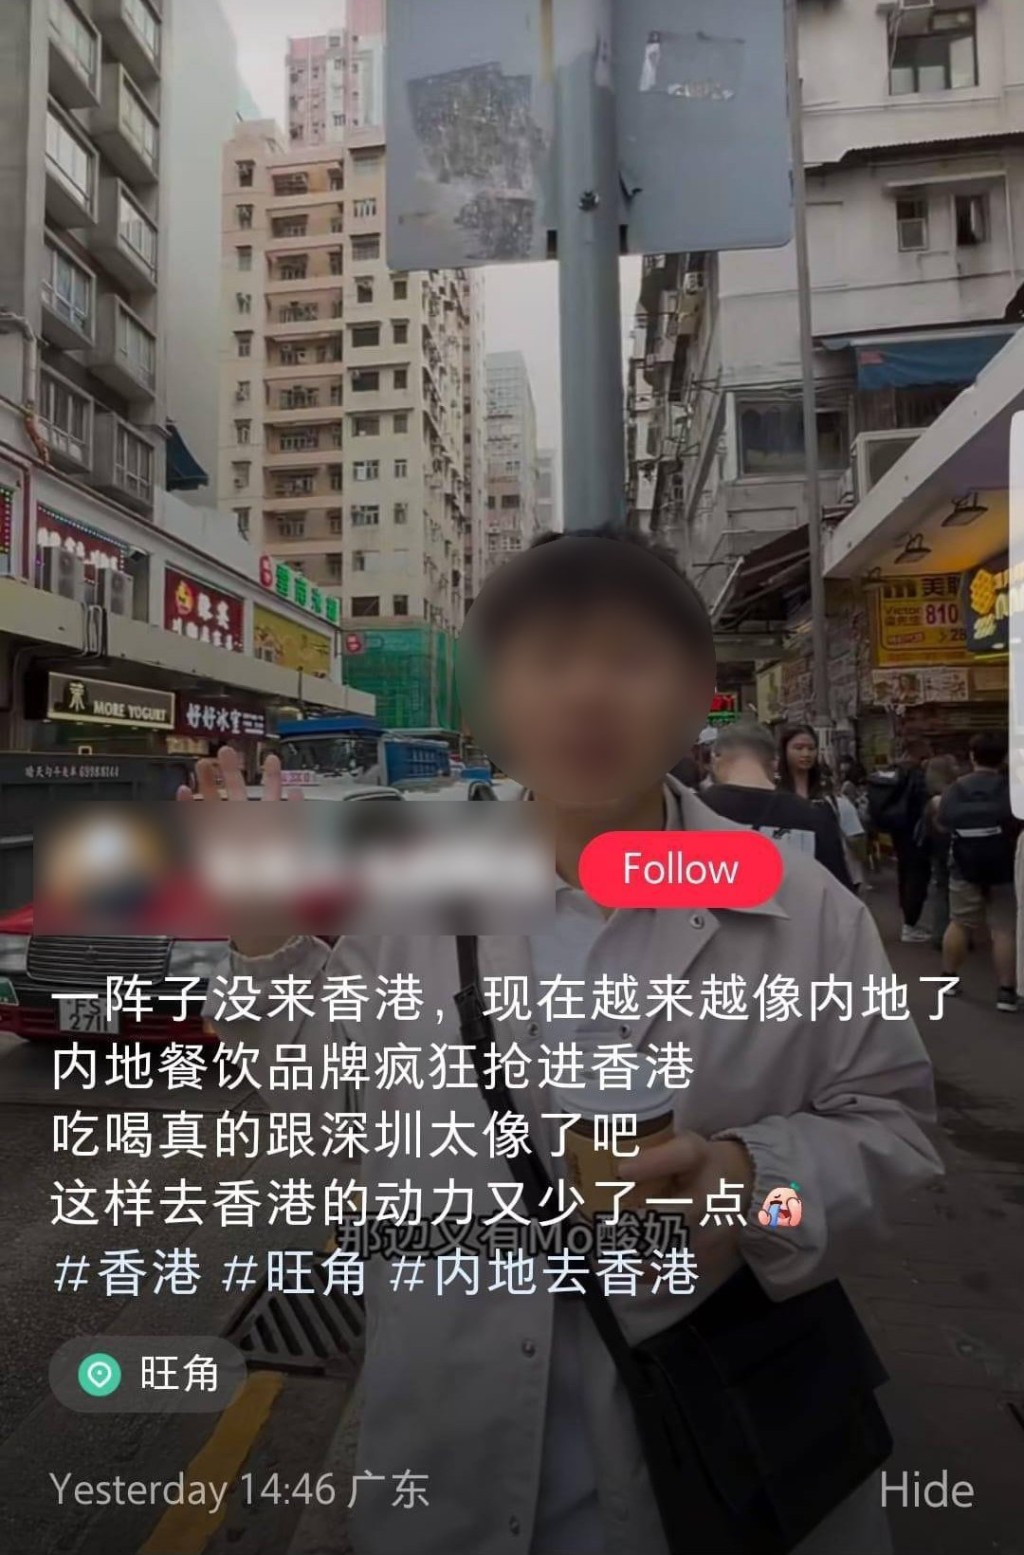 小红书用户发布影片，指香港吃喝跟深圳太像，减少去香港的动力。小红书截图